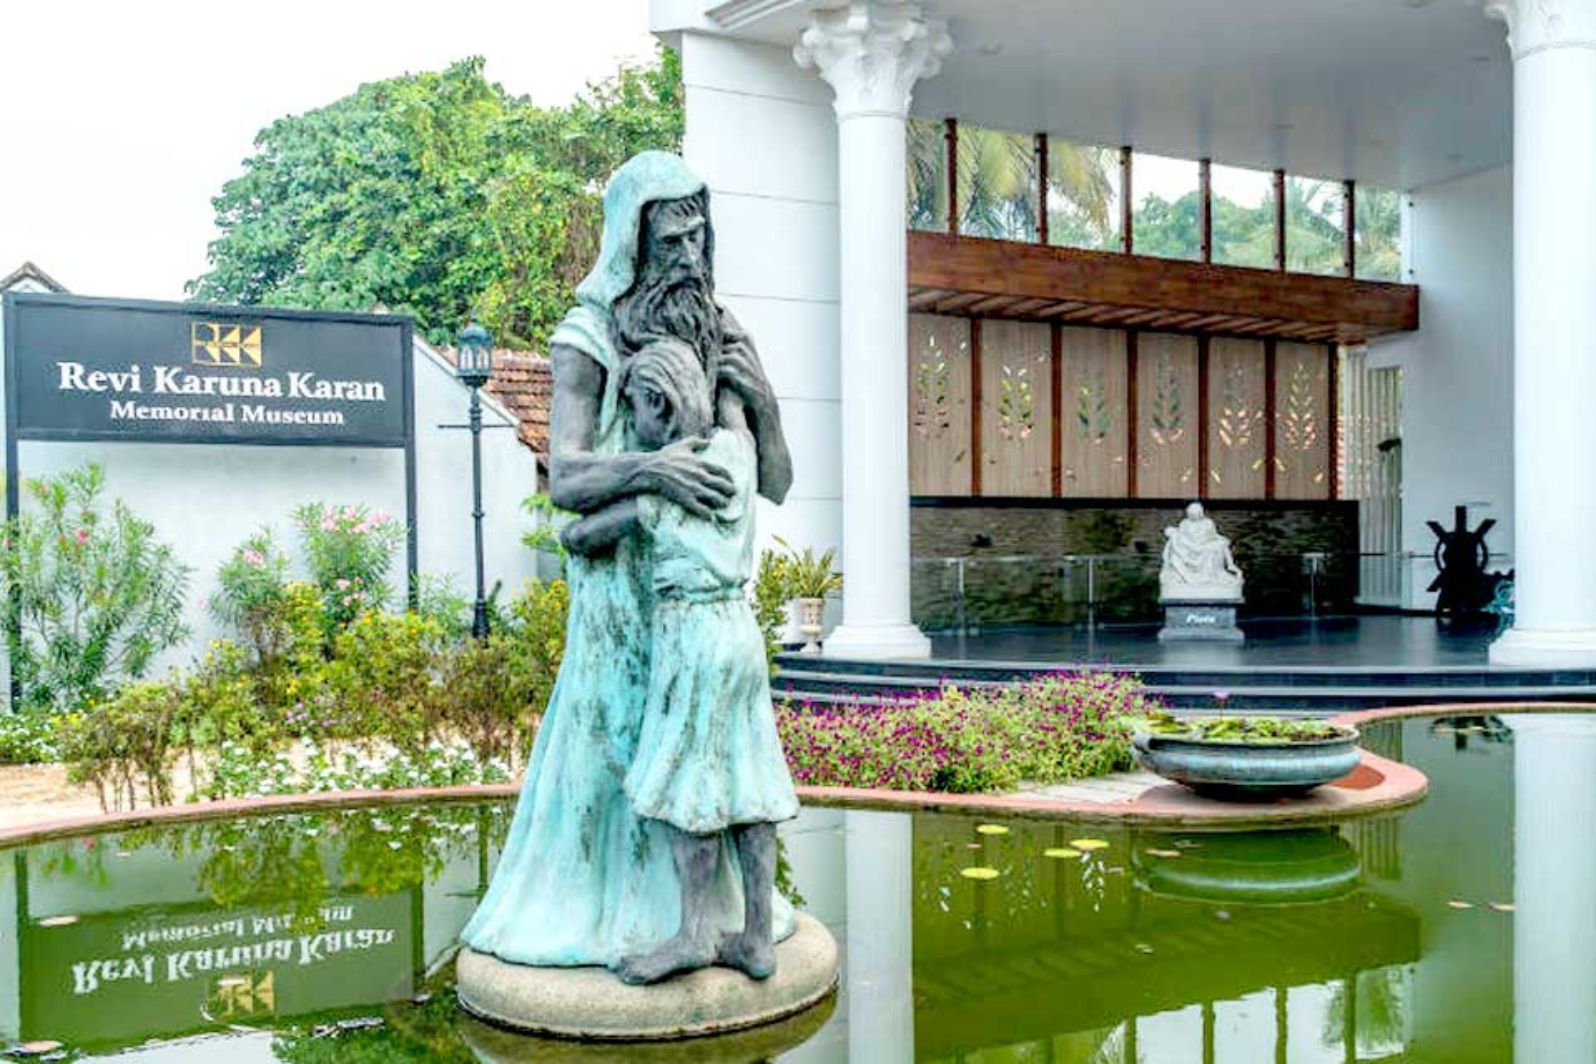 revi karunakaran memorial museum in kerala